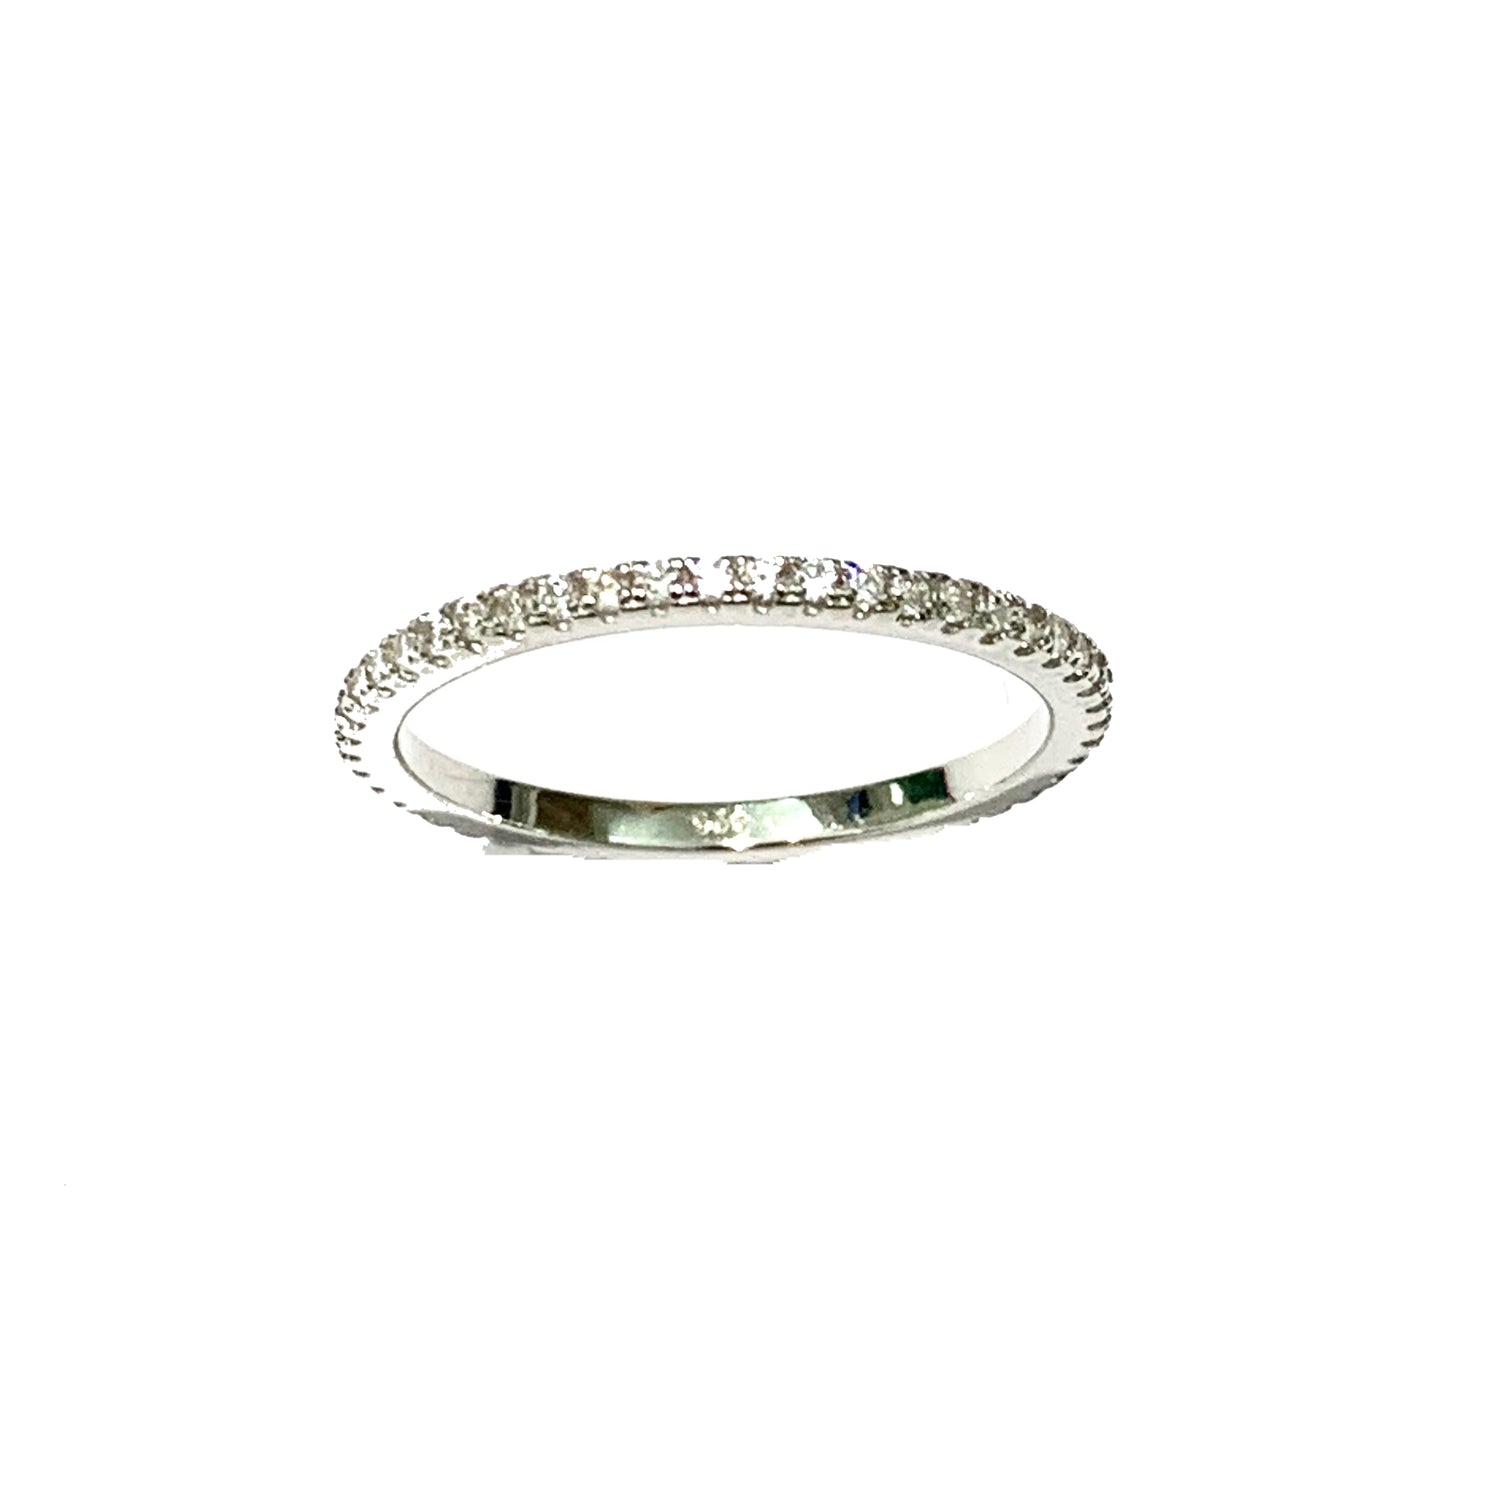 Anello veretta in argento con un giro di zirconi.  Larghezza 0,1 cm.  Più misure disponibili.